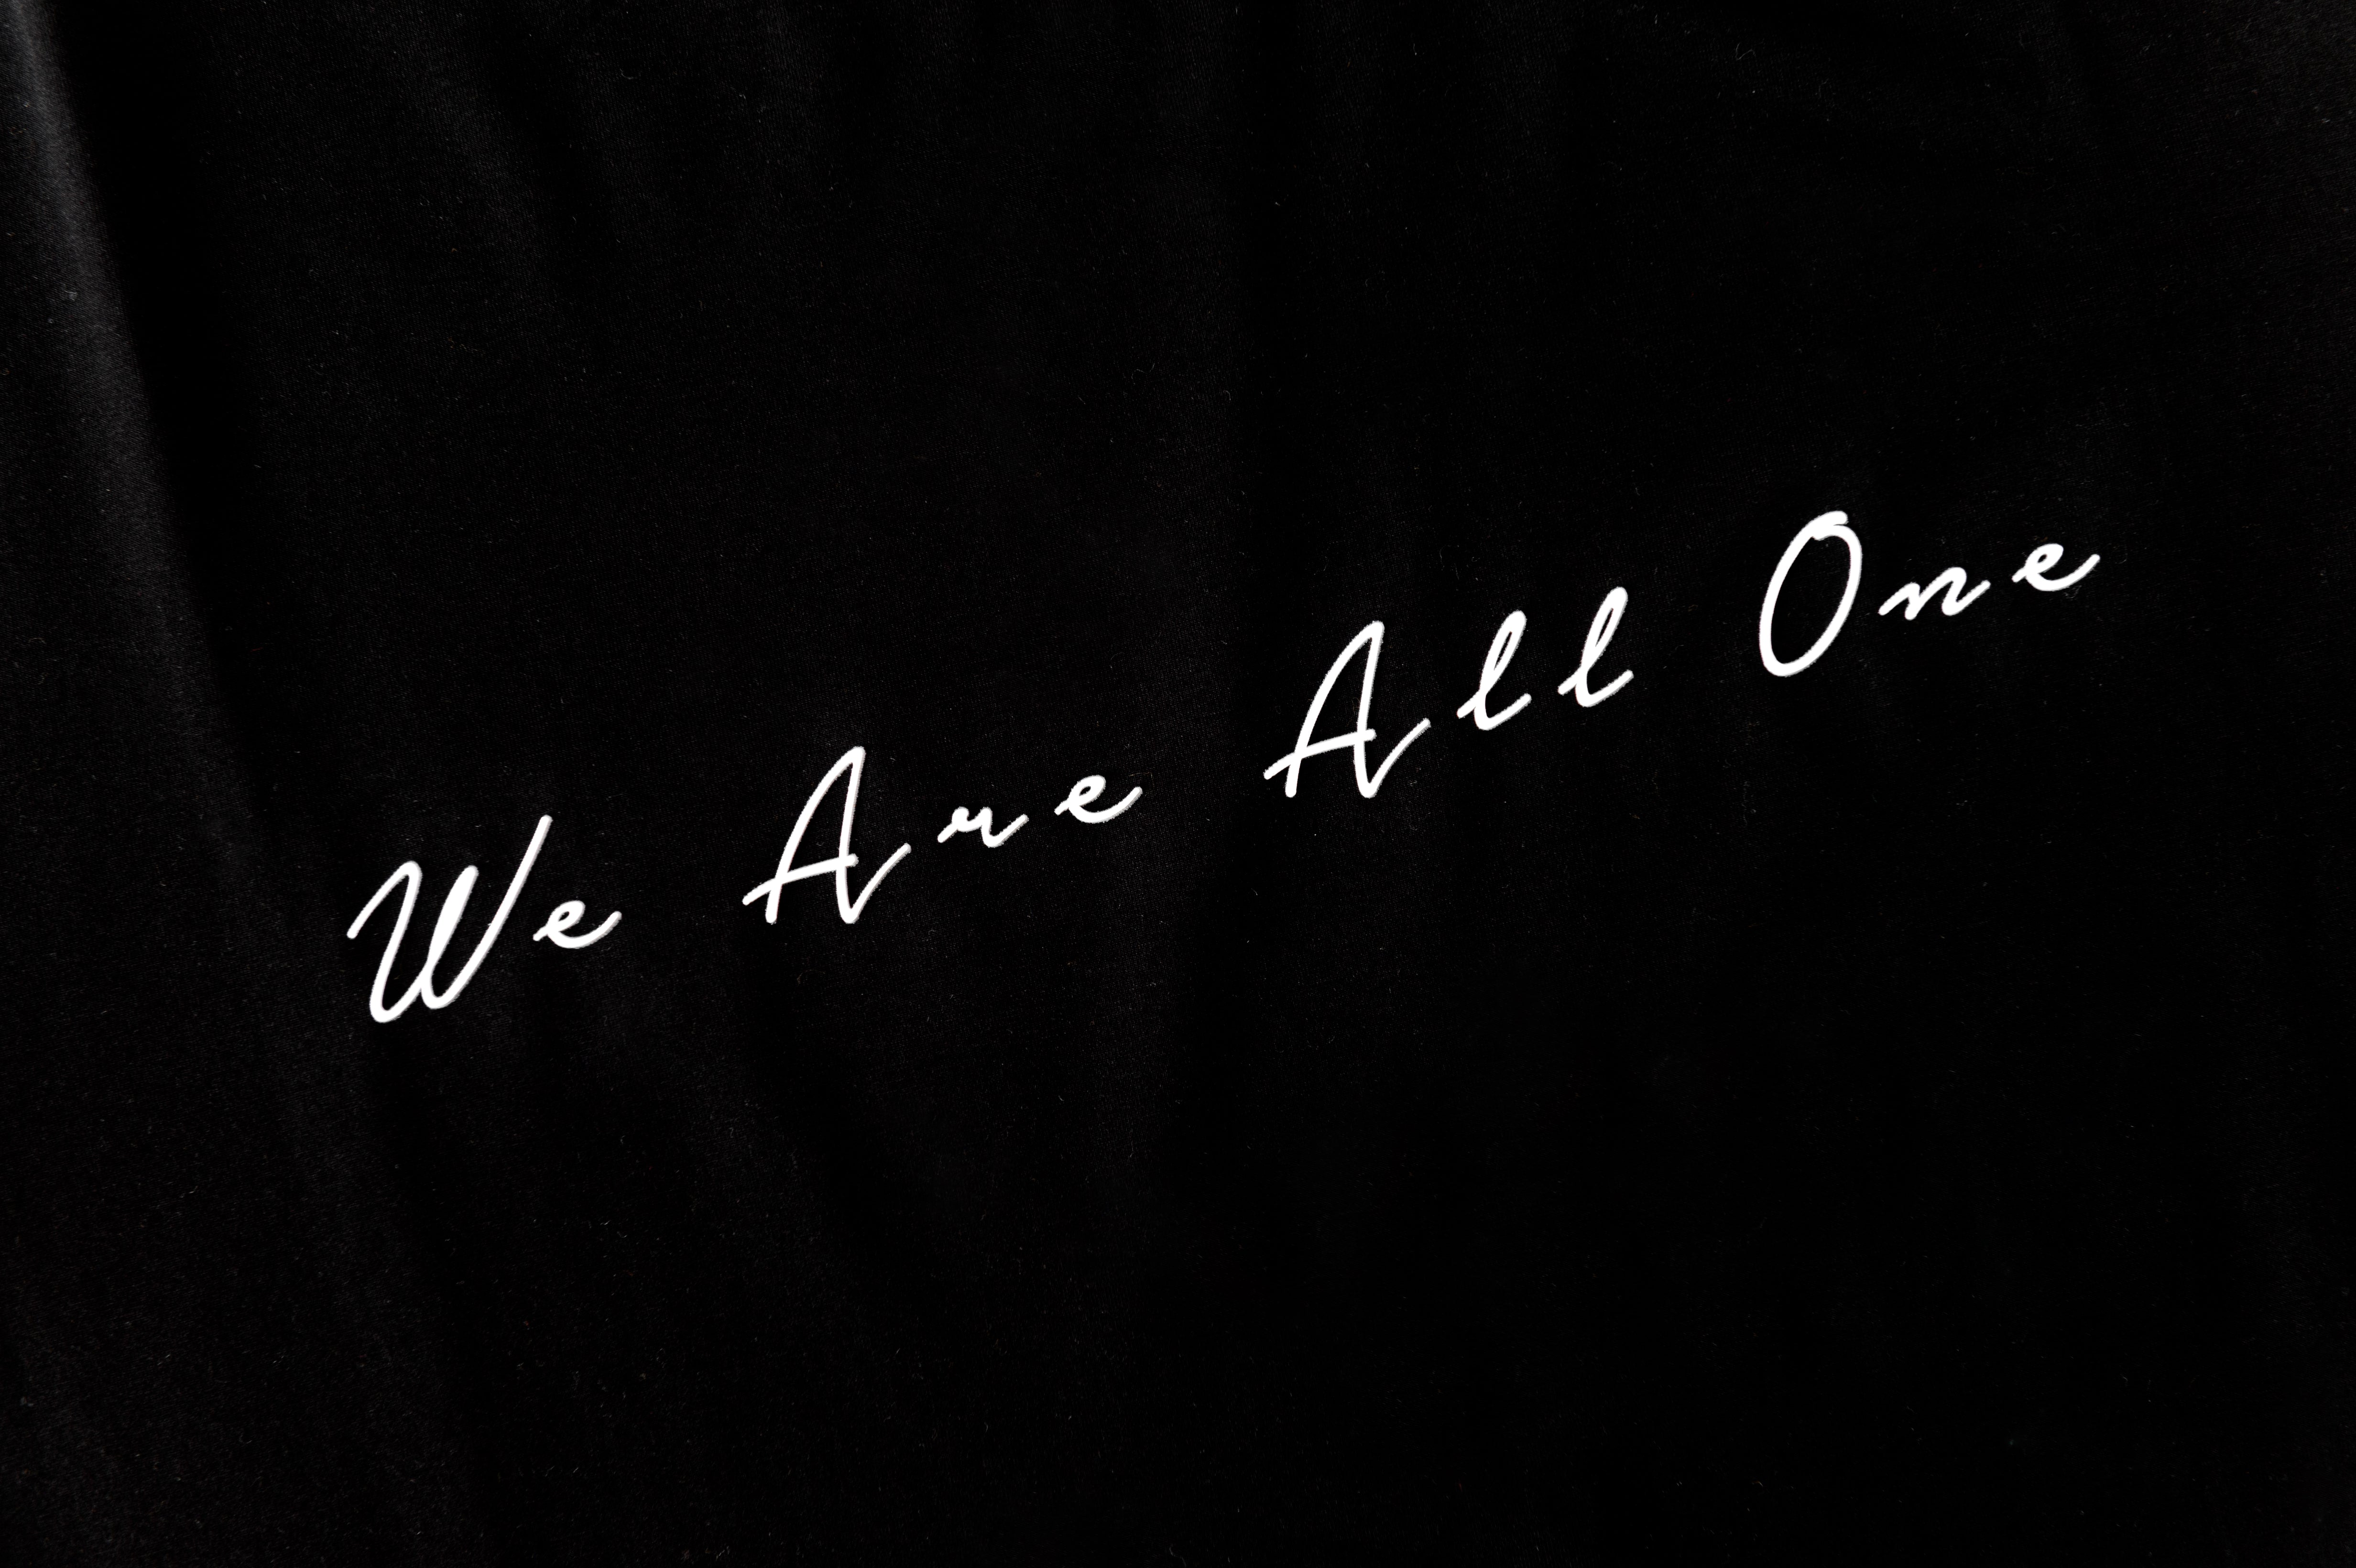 We Are All One - Signature Black Premium T-Shirt